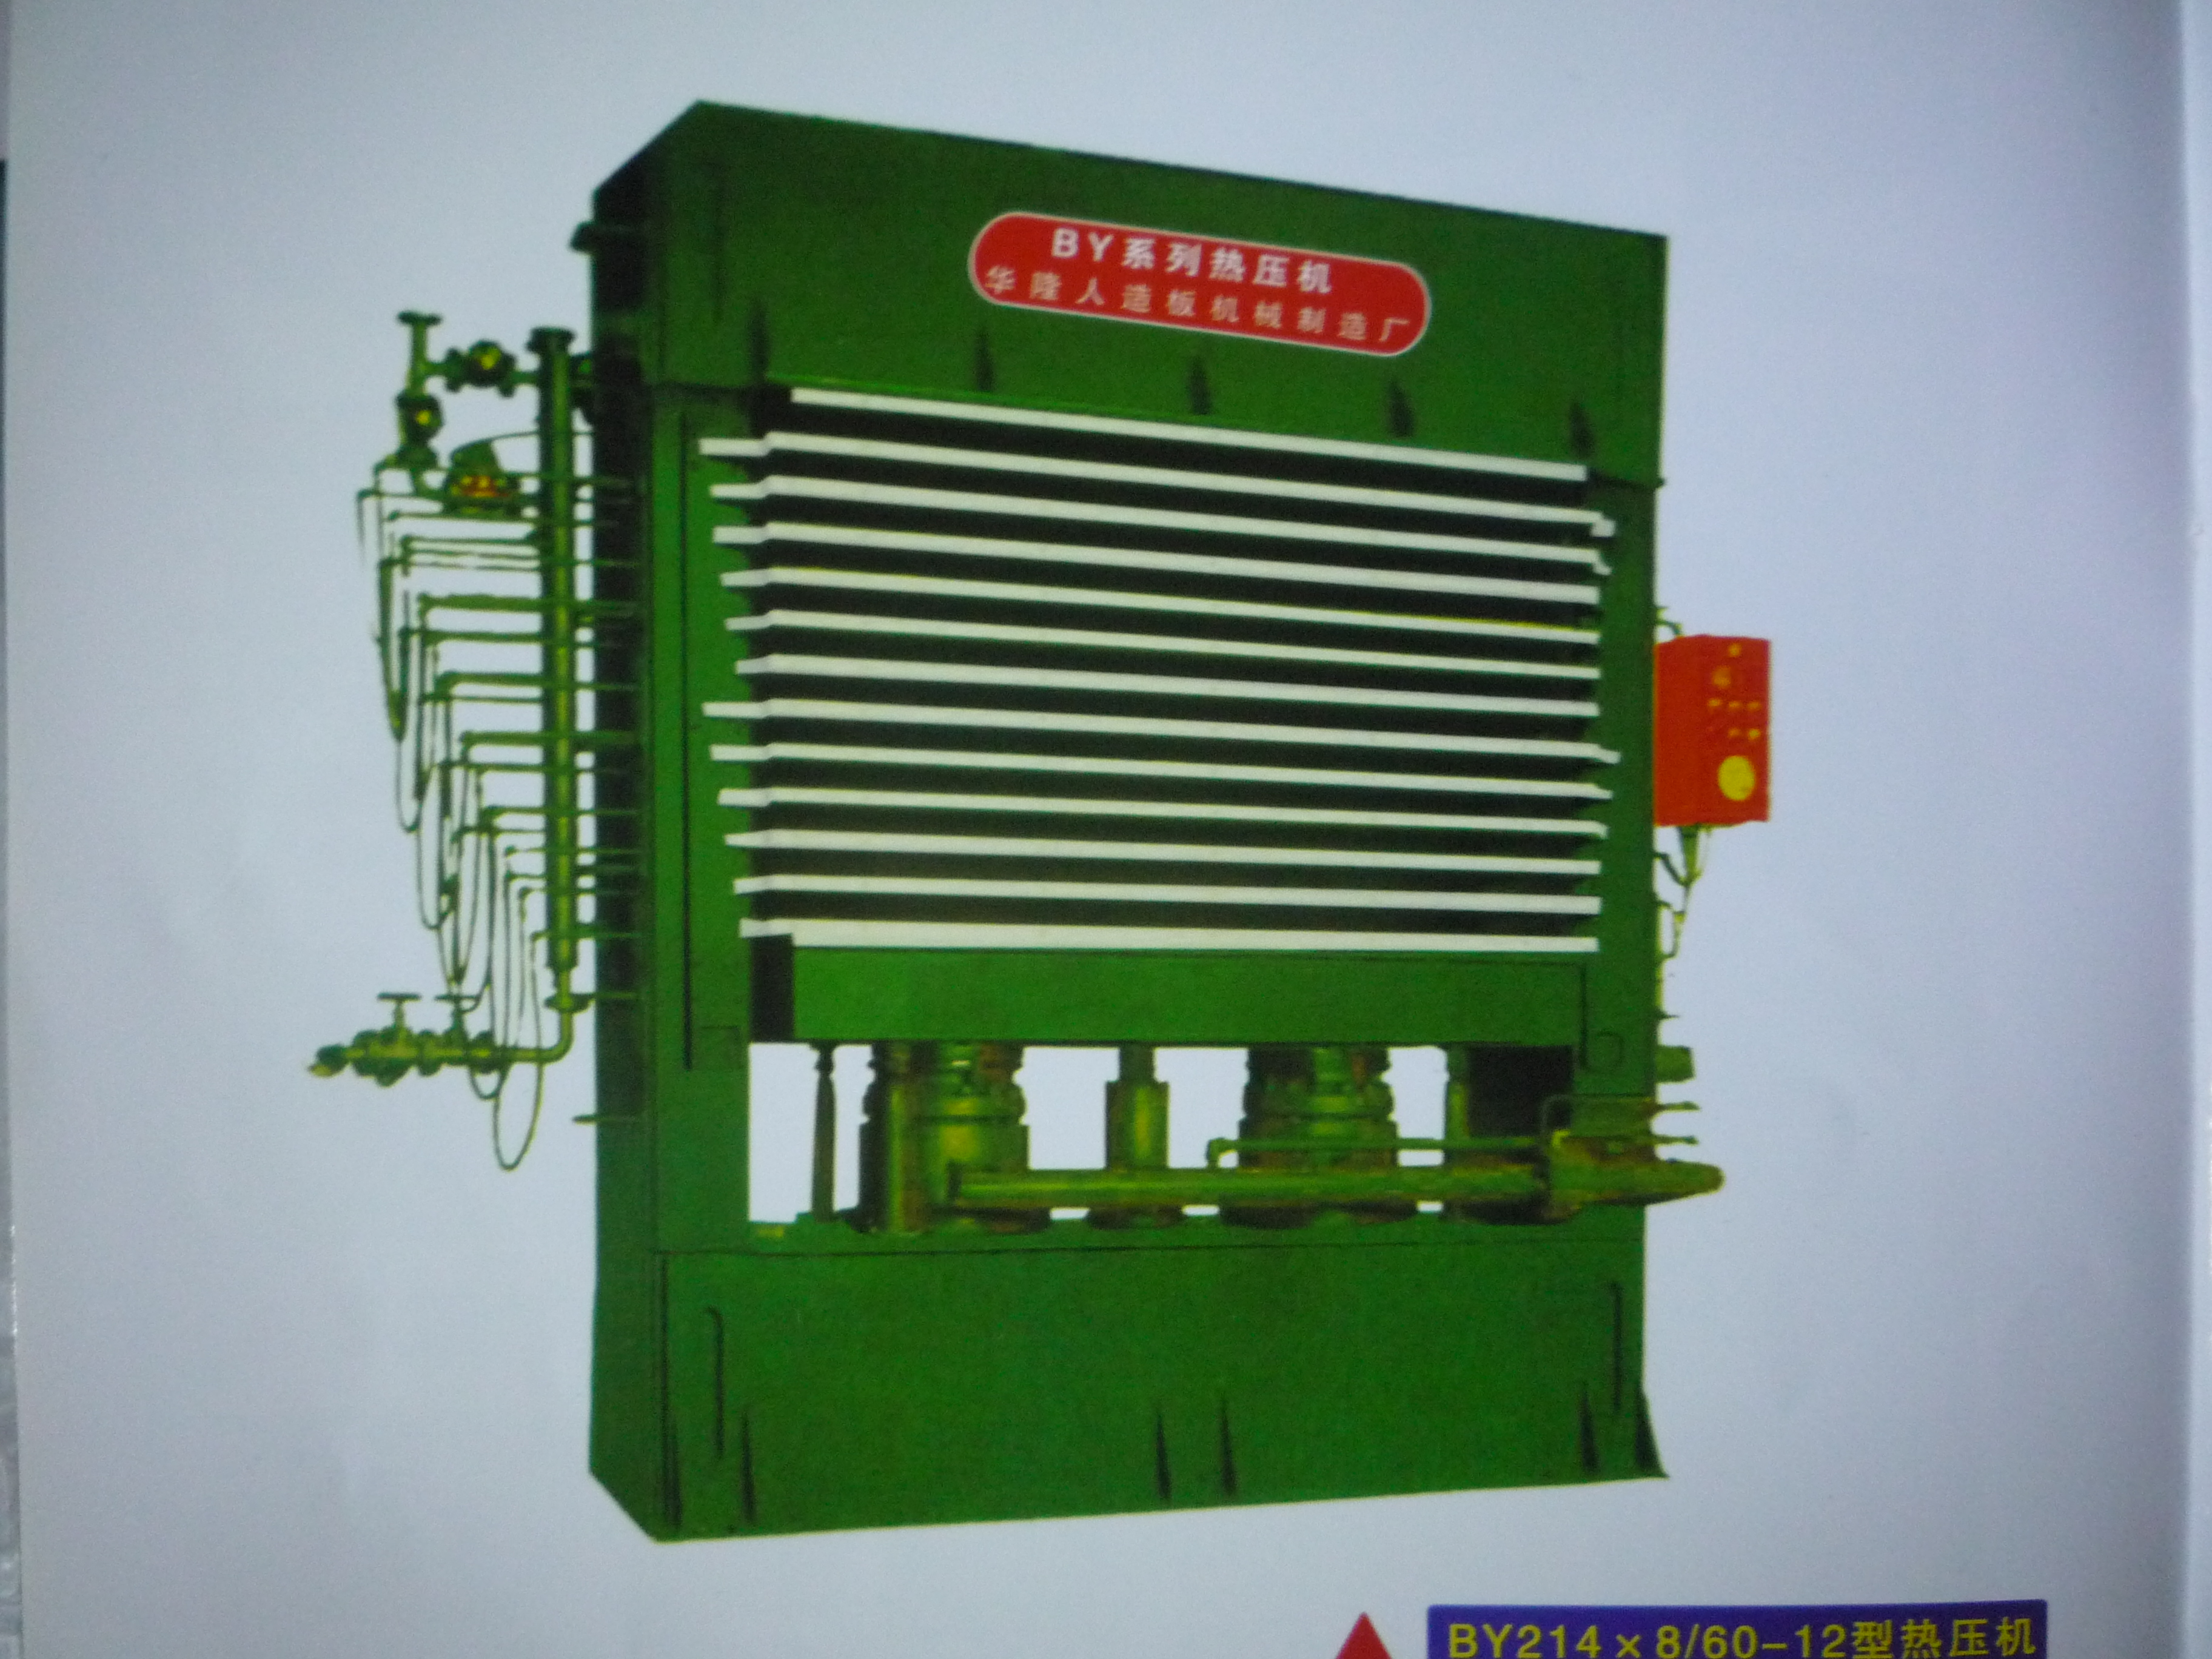 供应用于木工的河北生态板热压机专业厂家河北生态板热压机报价河北生态板热压机多少钱图片